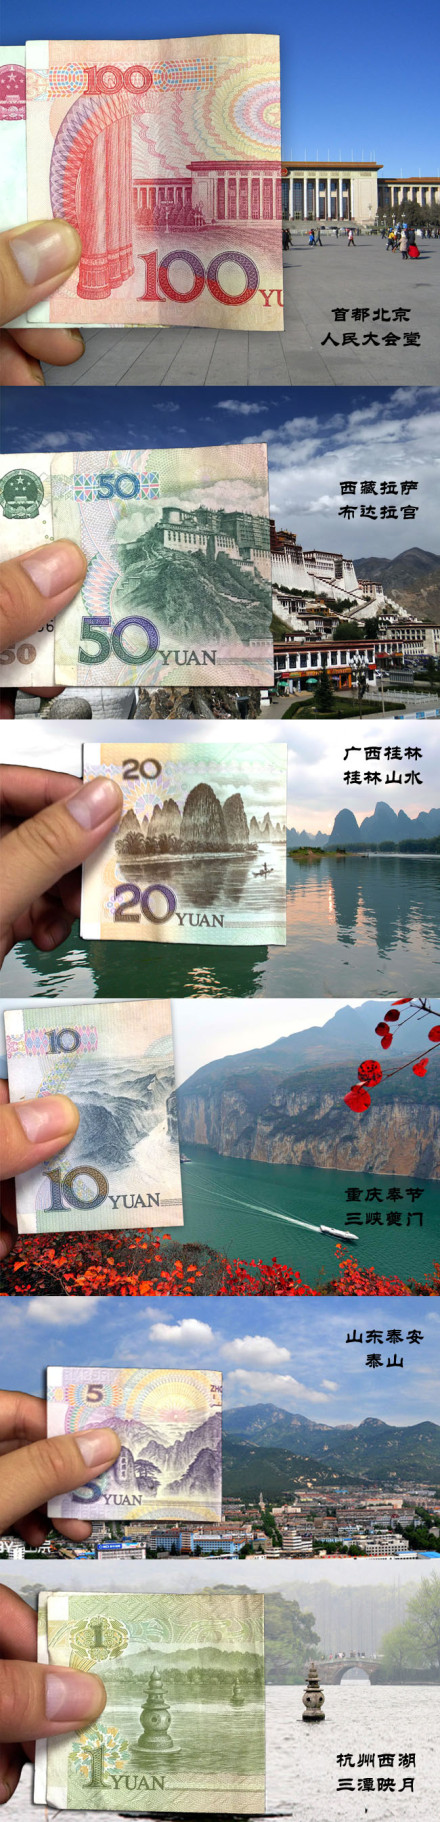 【揭秘人民币背后的风景名胜 】——通过纸币与现实的拼接,走进人民币